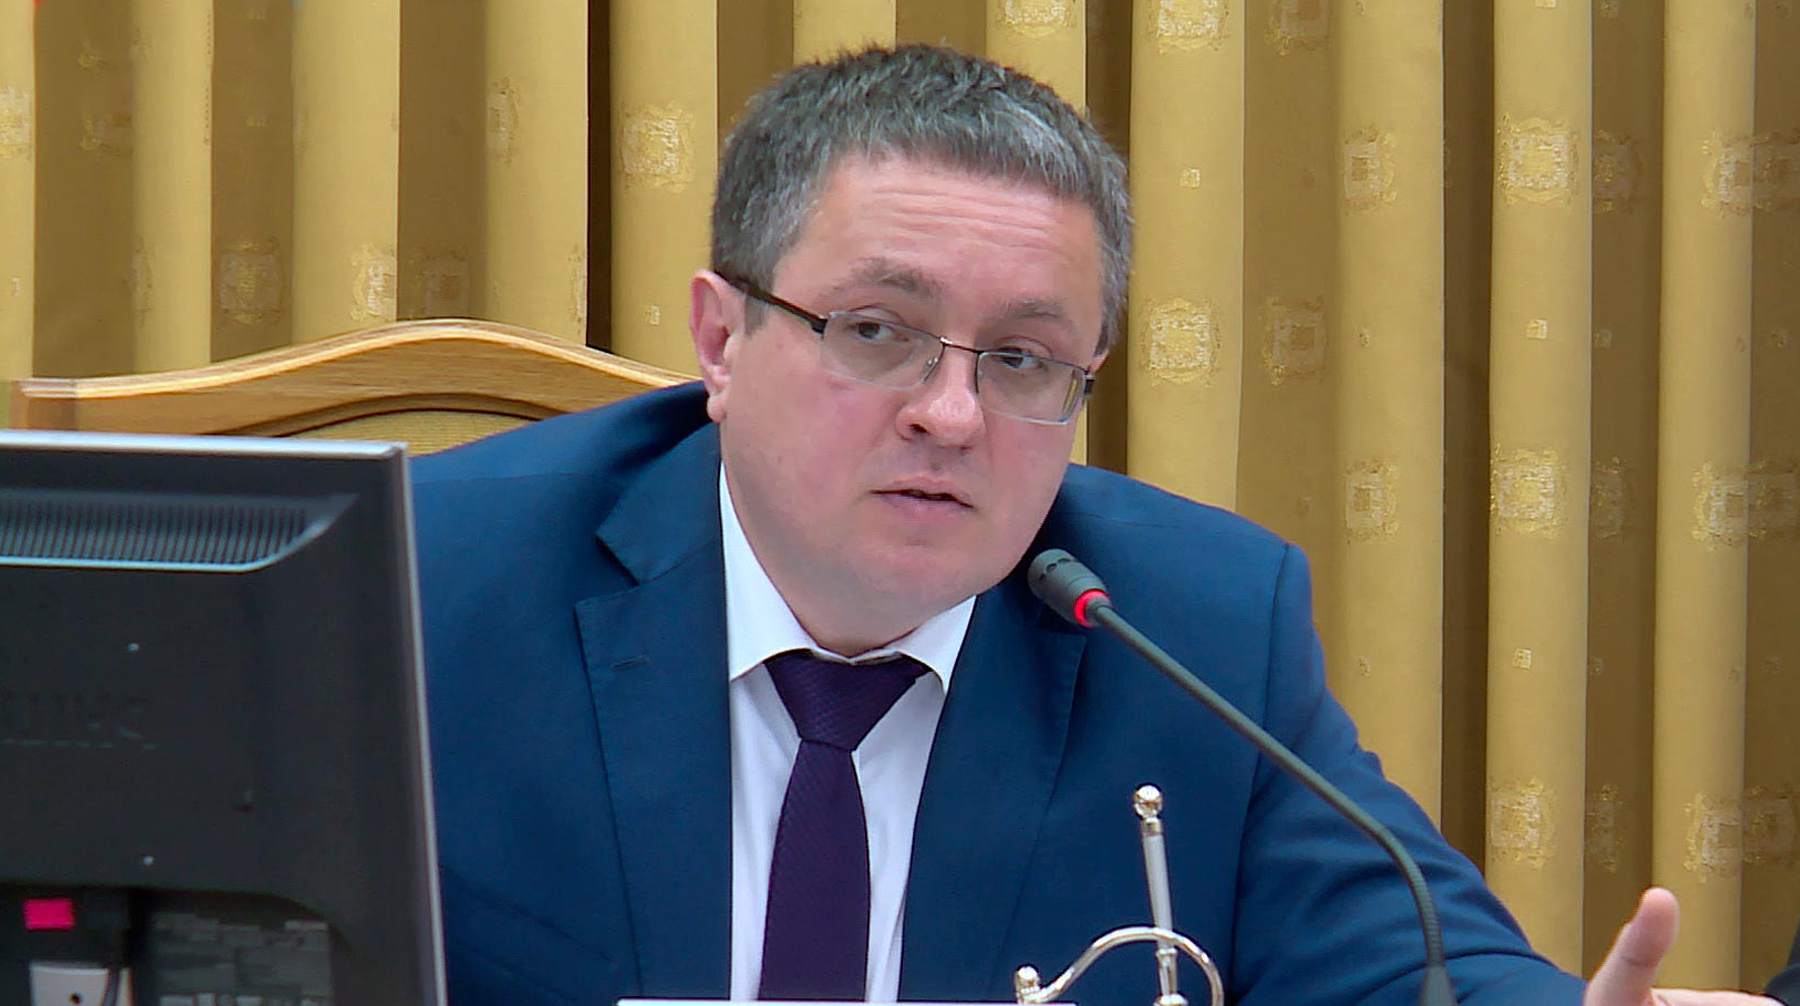 Градоначальник Дмитрий Разумовский покинул свой пост и перешел в региональное правительство Дмитрий Денисов, врио мэра Калуги